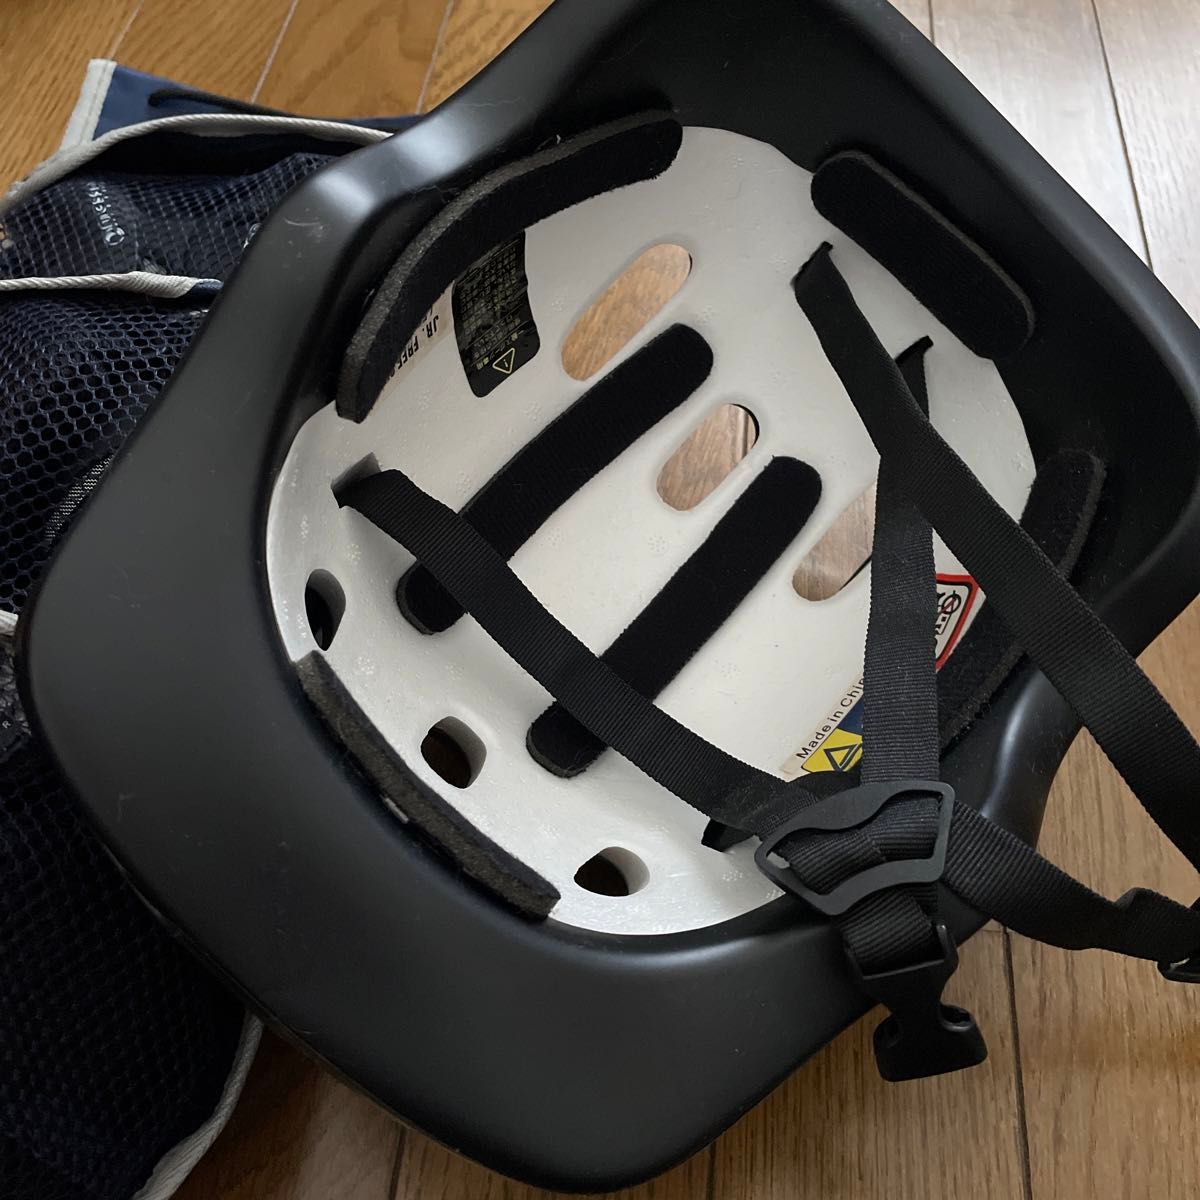 【MASSO】ニーパッド リストガード エルボーパッド  プロテクターセット + ヘルメット